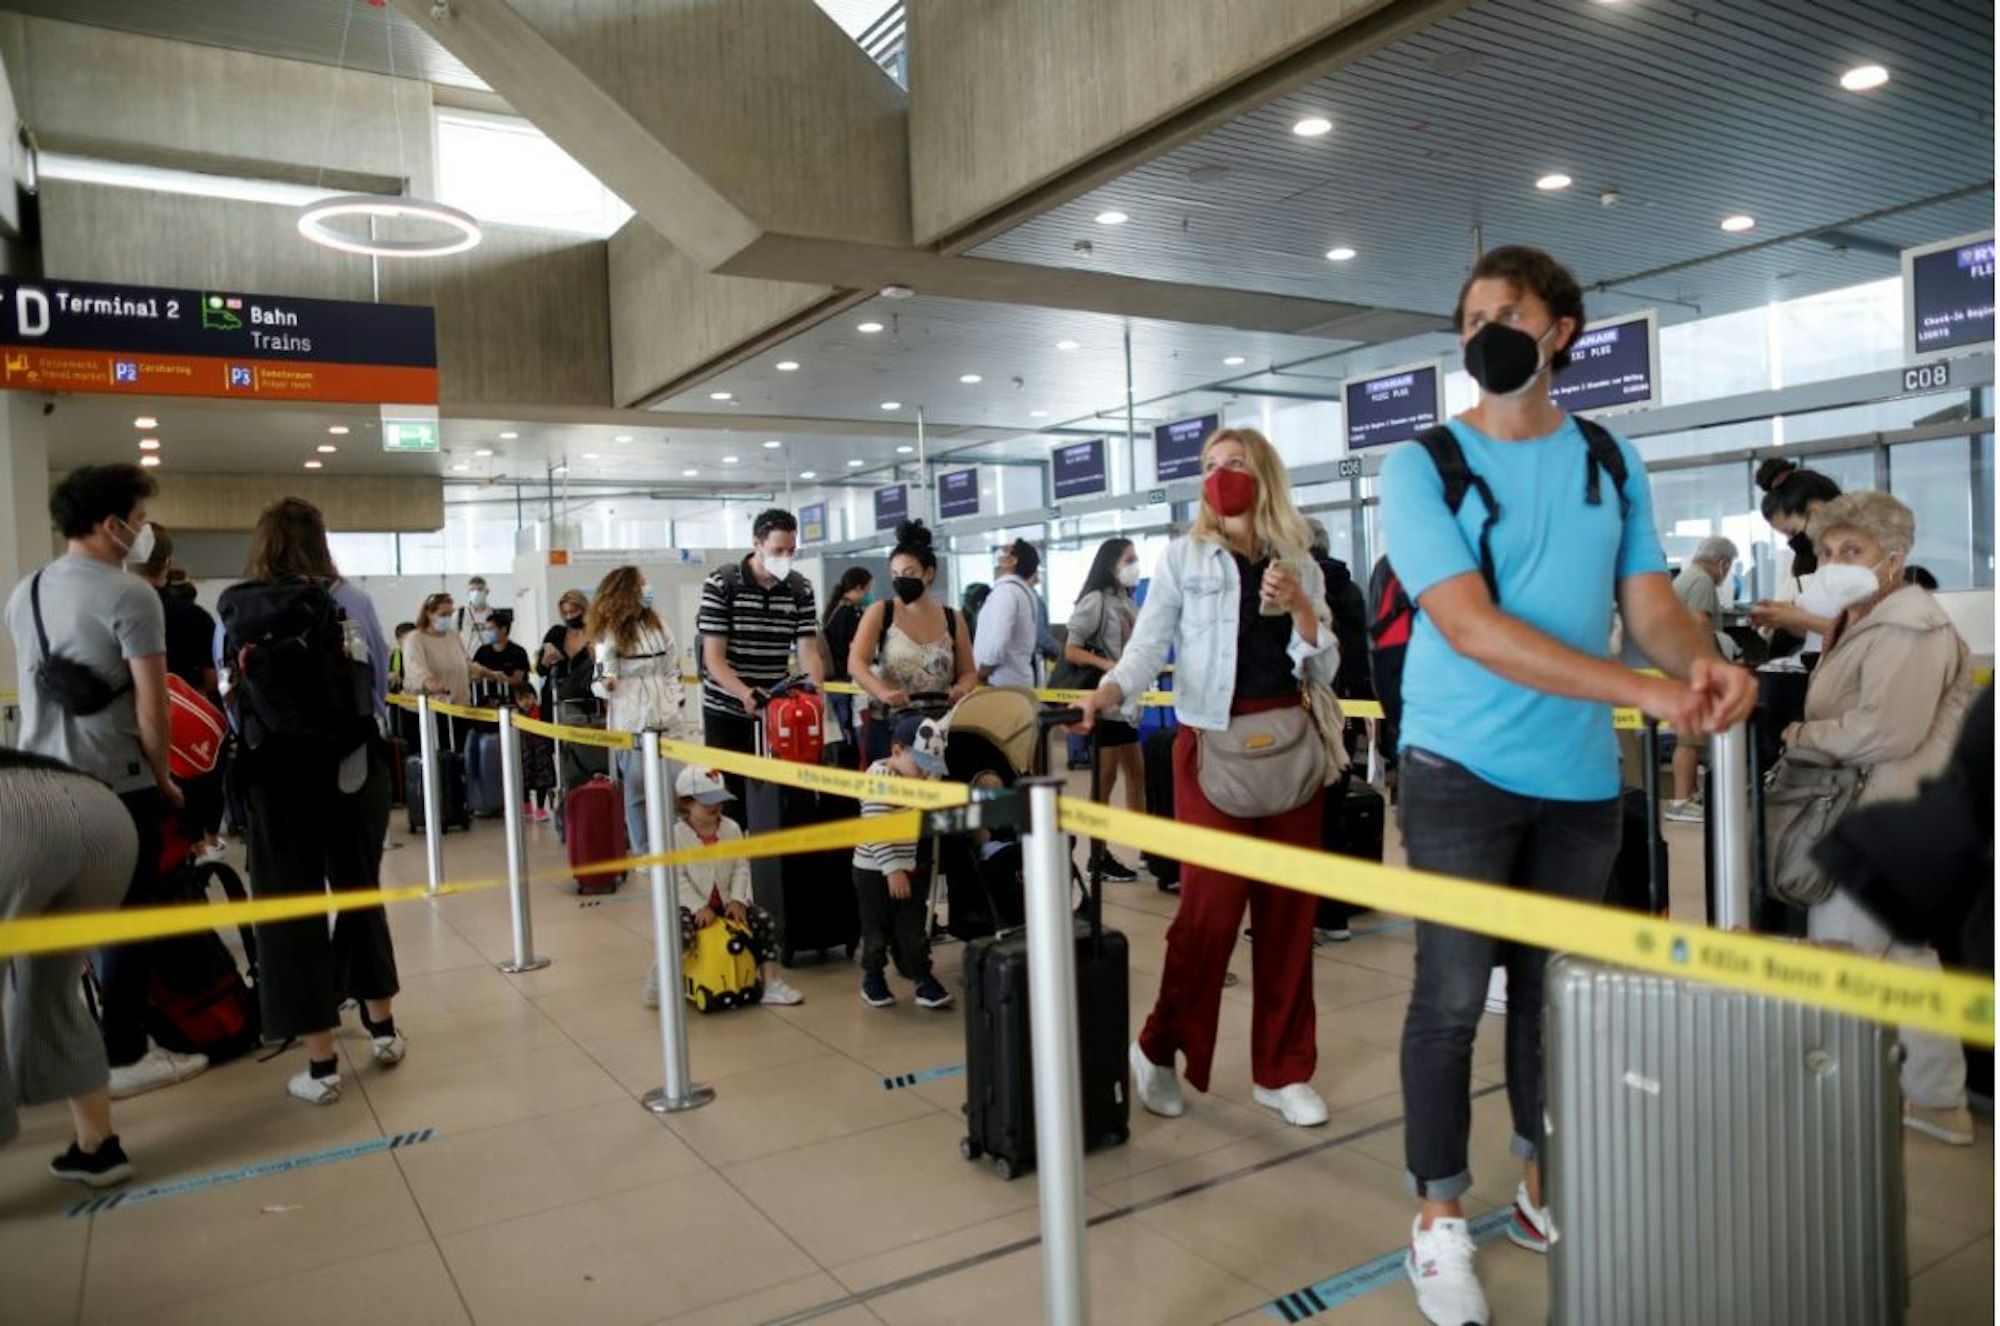 Fluggäste warten am Flughafen Köln/Bonn auf den Check-in. Foto von Arton Krasniqi